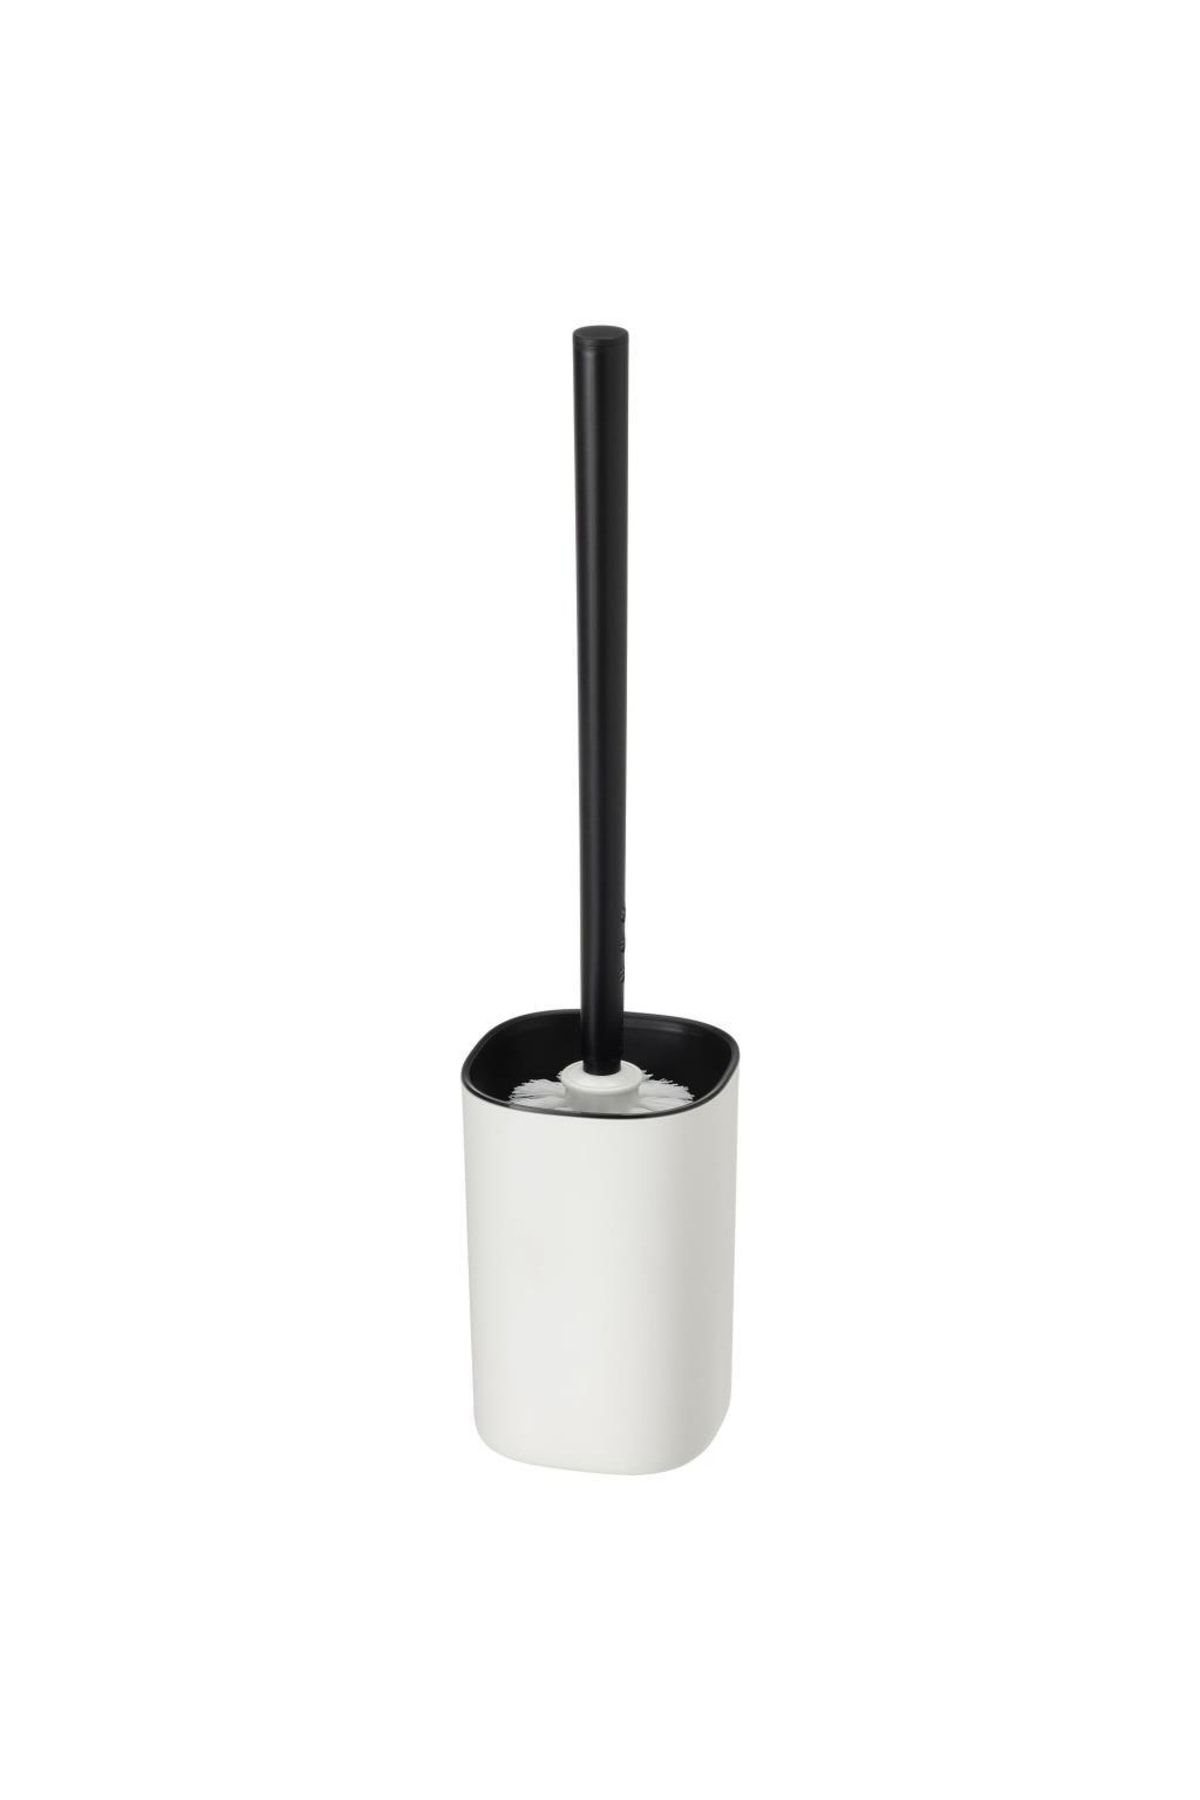 IKEA Storavan Klozet / Tuvalet Fırçası - Beyaz / Siyah